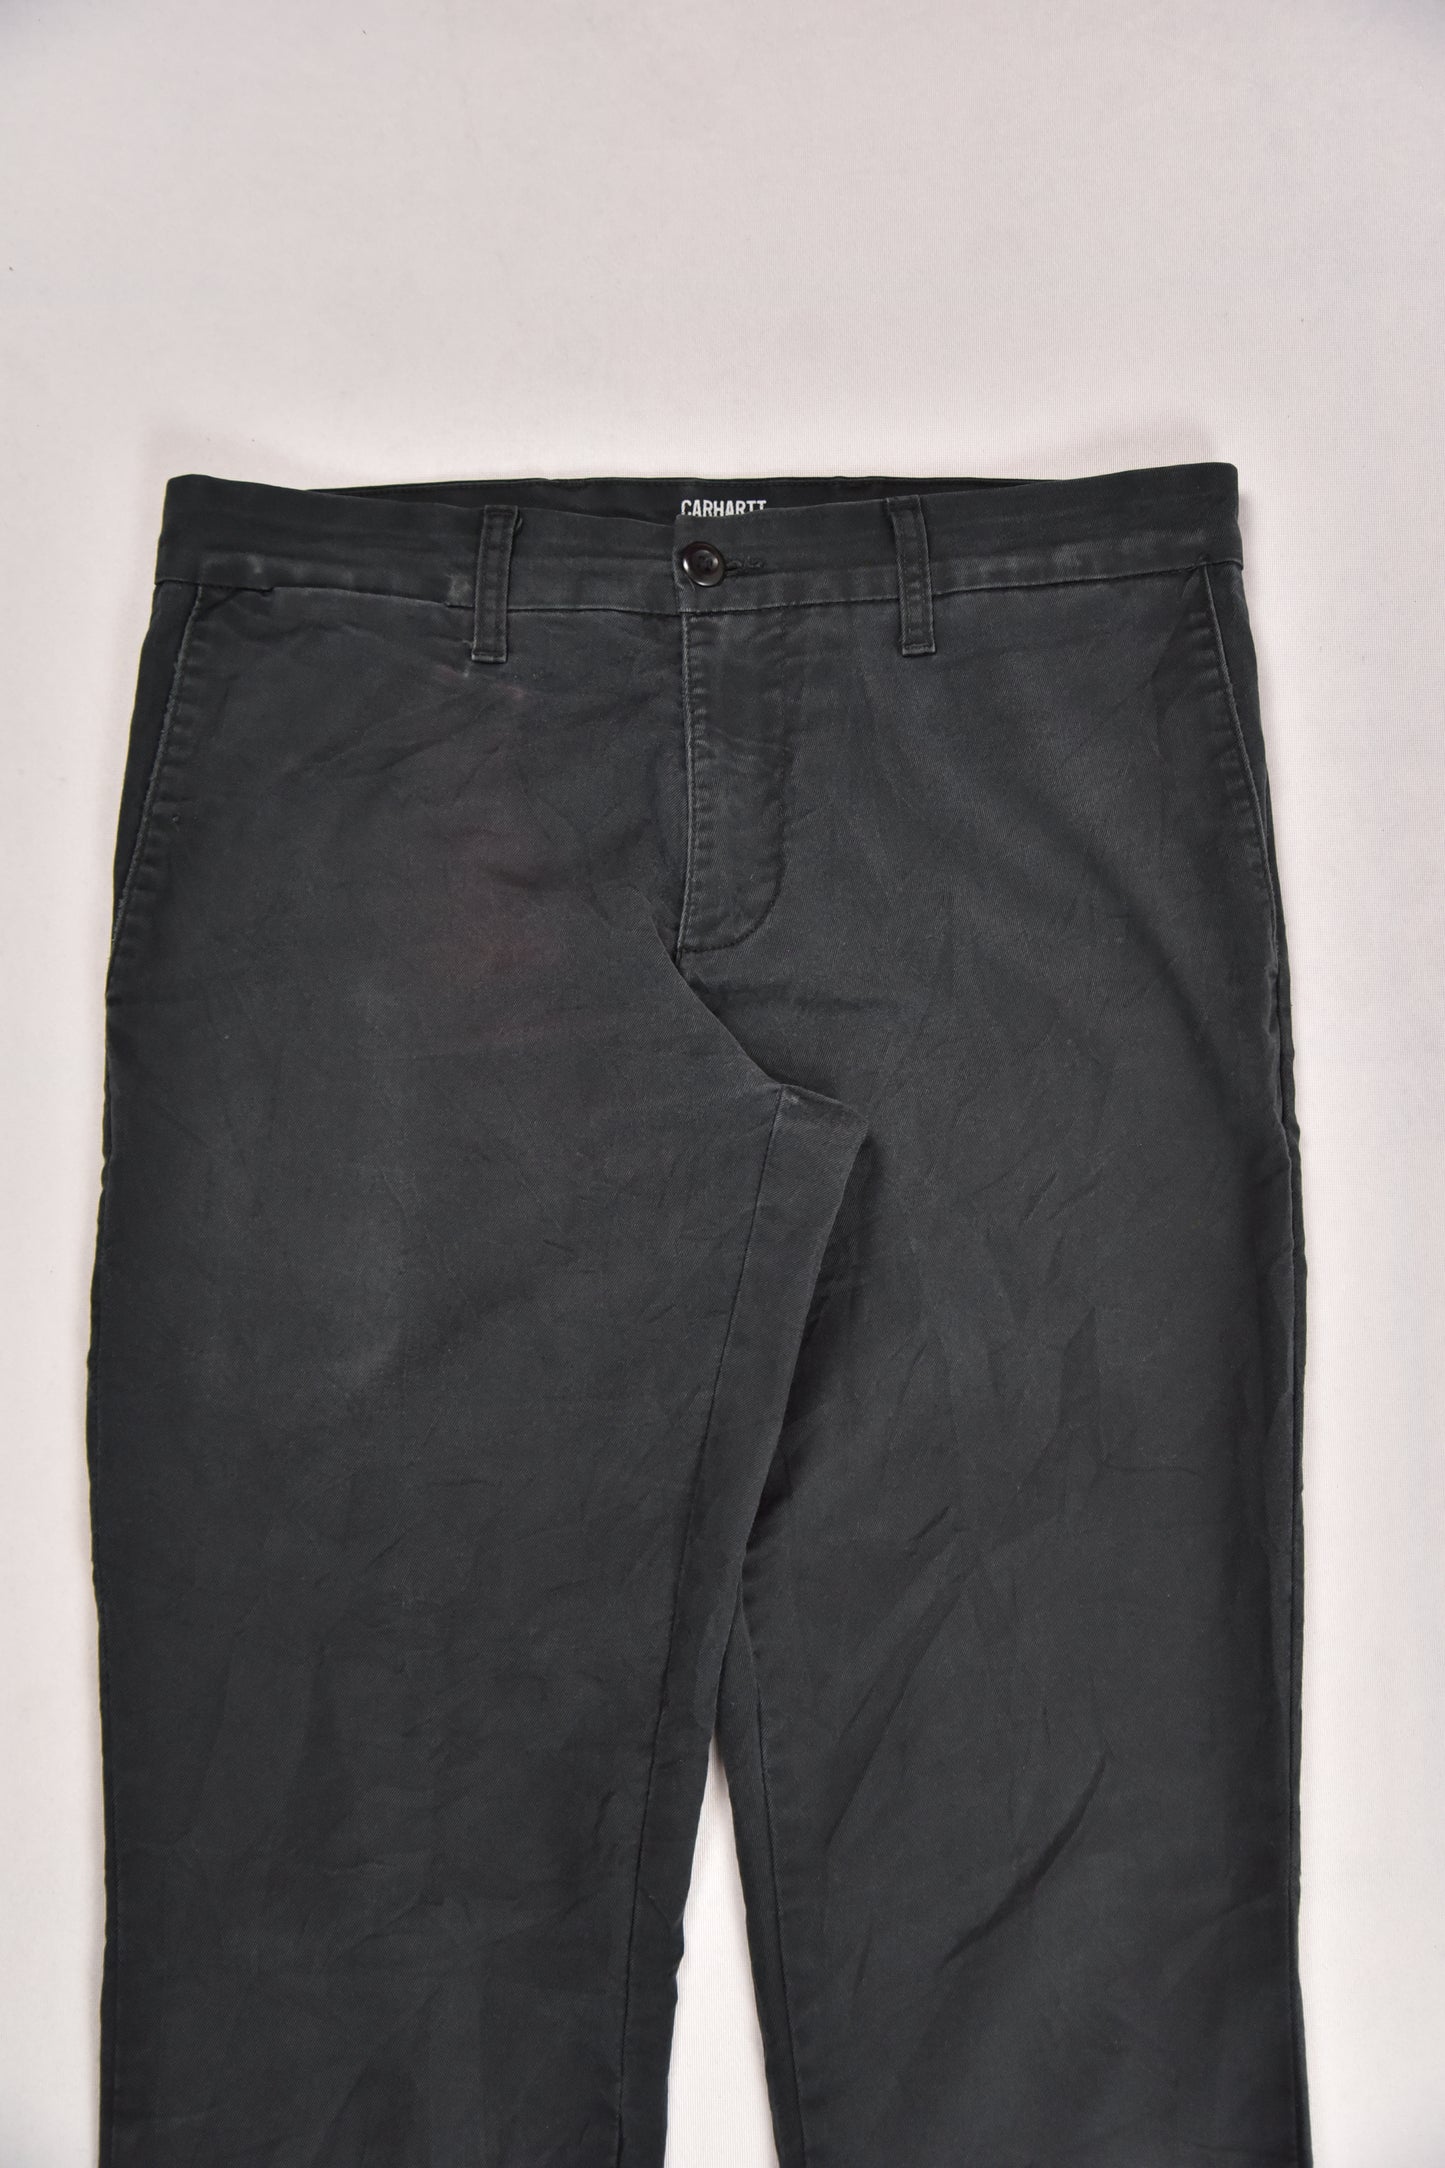 Carhartt Pants Vintage / 32x32